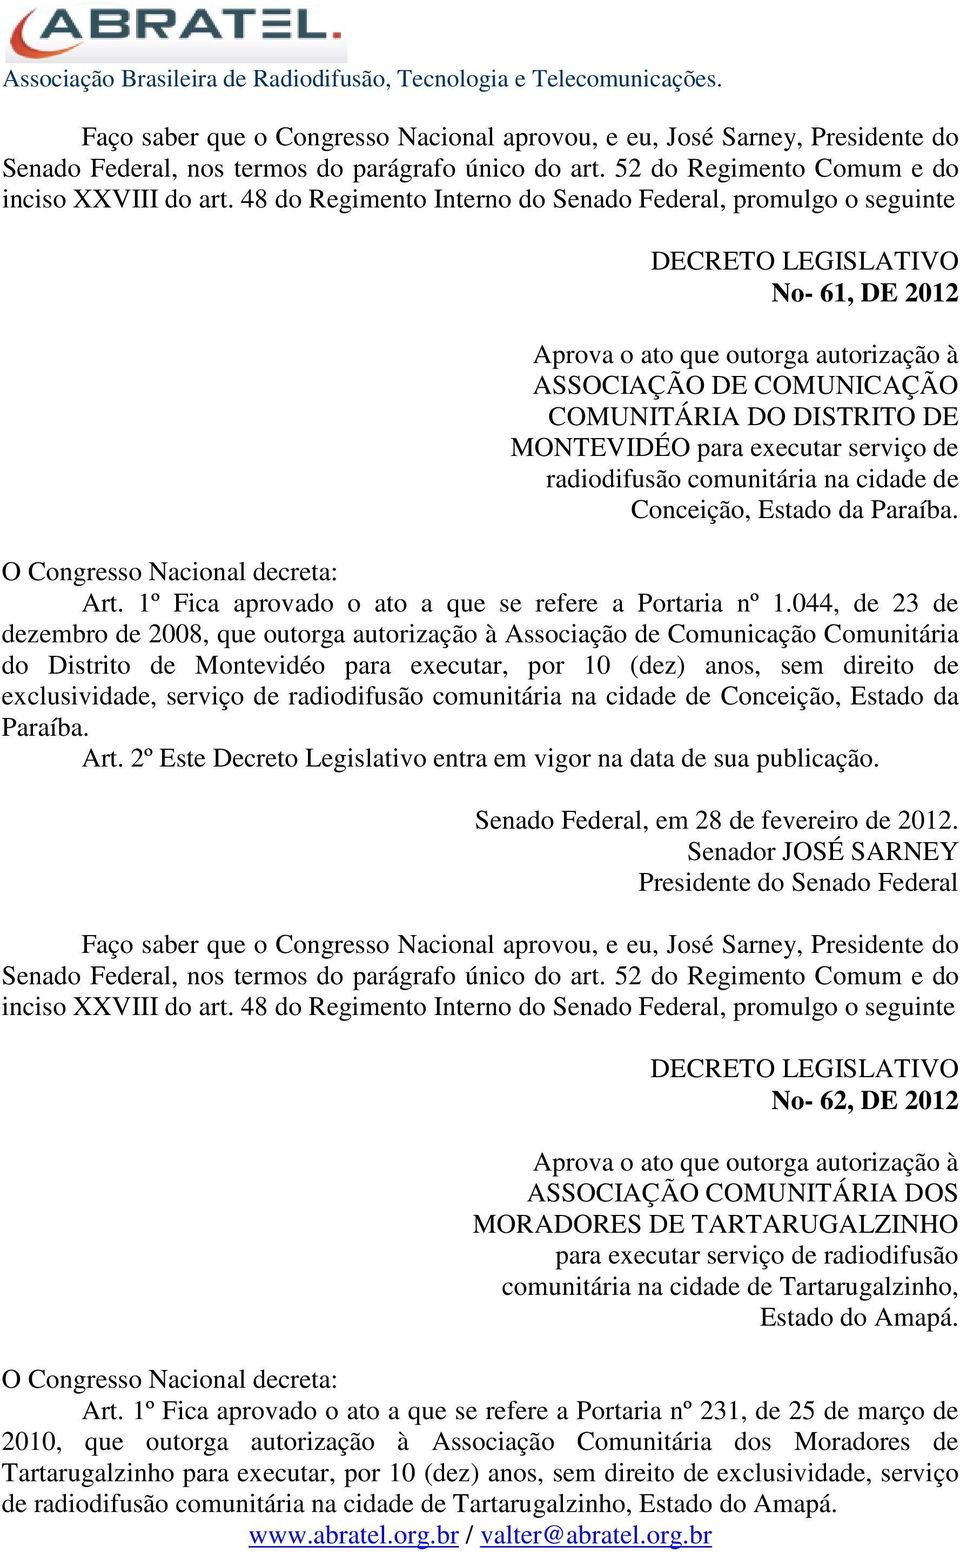 044, de 23 de dezembro de 2008, que outorga autorização à Associação de Comunicação Comunitária do Distrito de Montevidéo para executar, por 10 (dez) anos, sem direito de exclusividade, serviço de